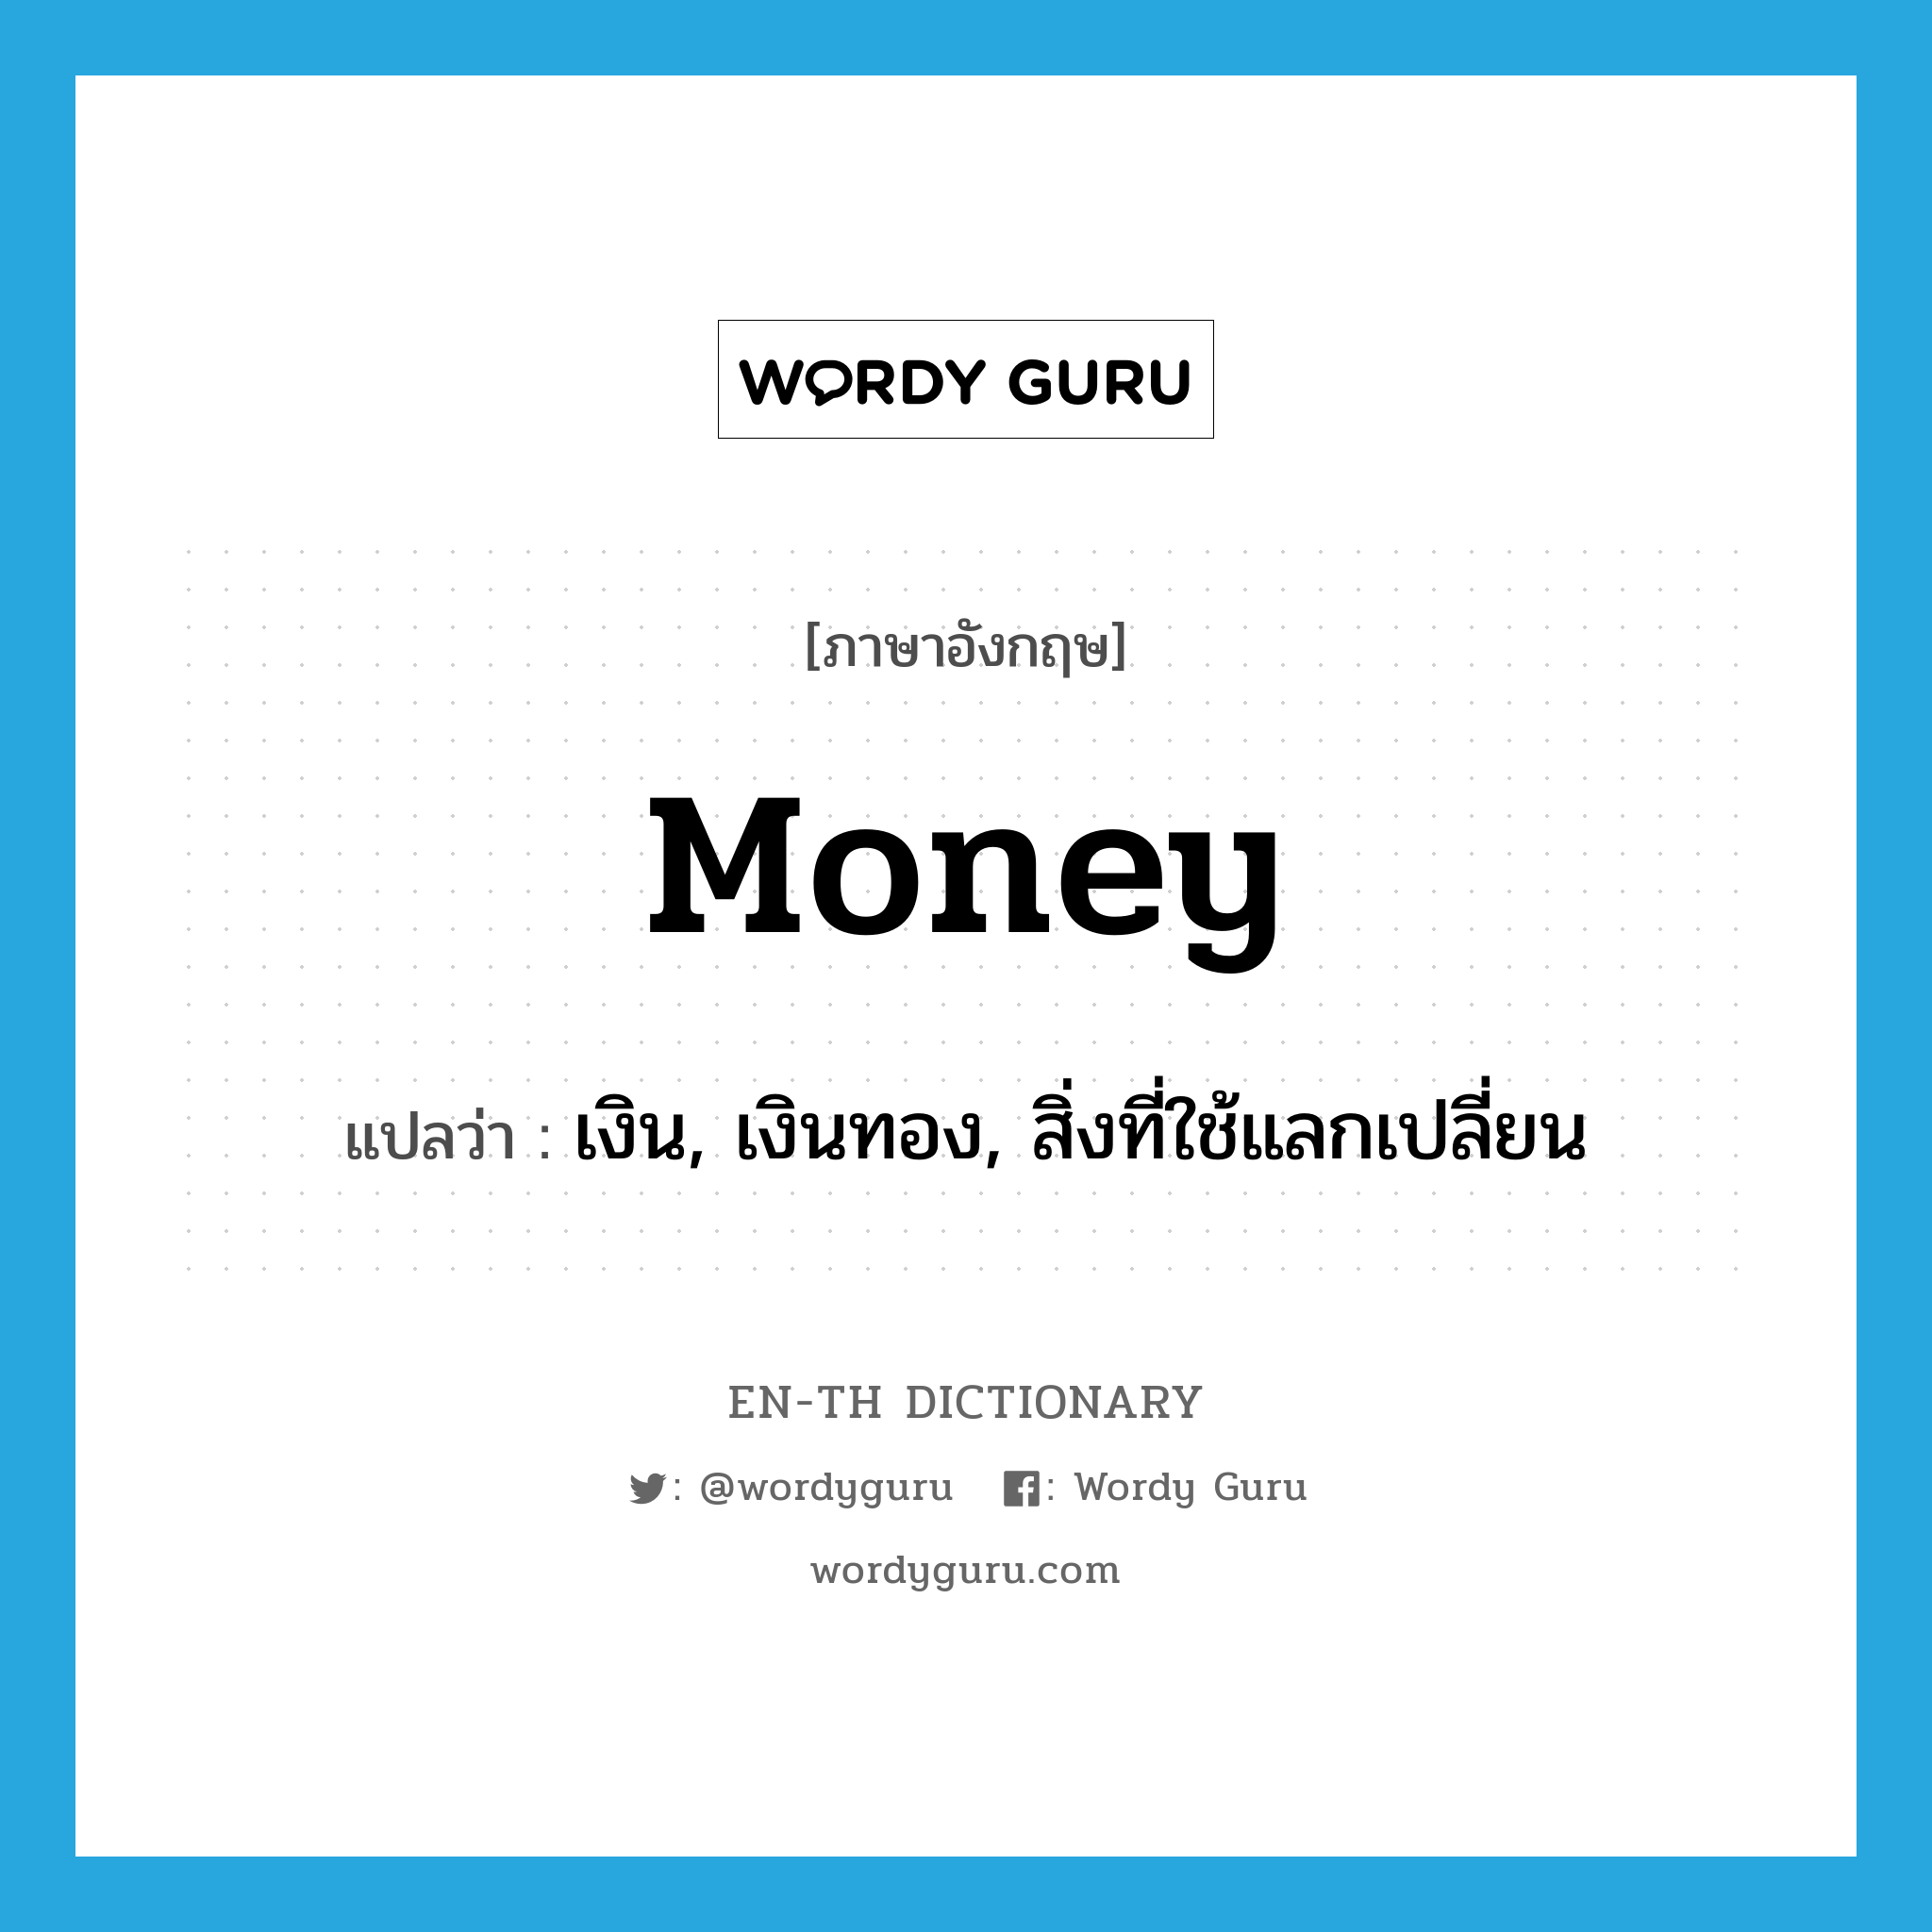 เงิน, เงินทอง, สิ่งที่ใช้แลกเปลี่ยน ภาษาอังกฤษ?, คำศัพท์ภาษาอังกฤษ เงิน, เงินทอง, สิ่งที่ใช้แลกเปลี่ยน แปลว่า money ประเภท N หมวด N